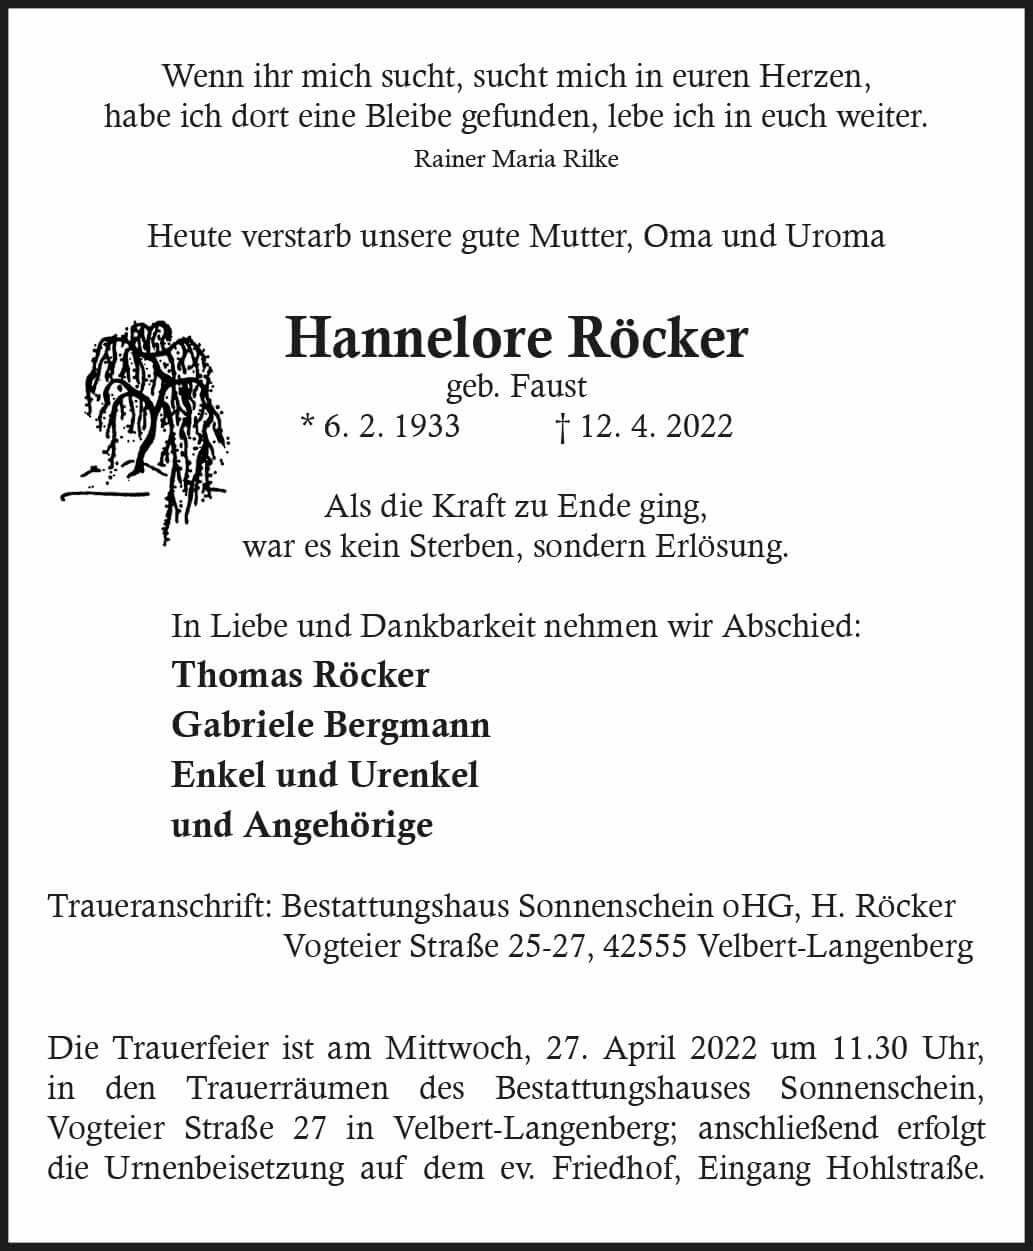 Hannelore Röcker † 12. 4. 2022